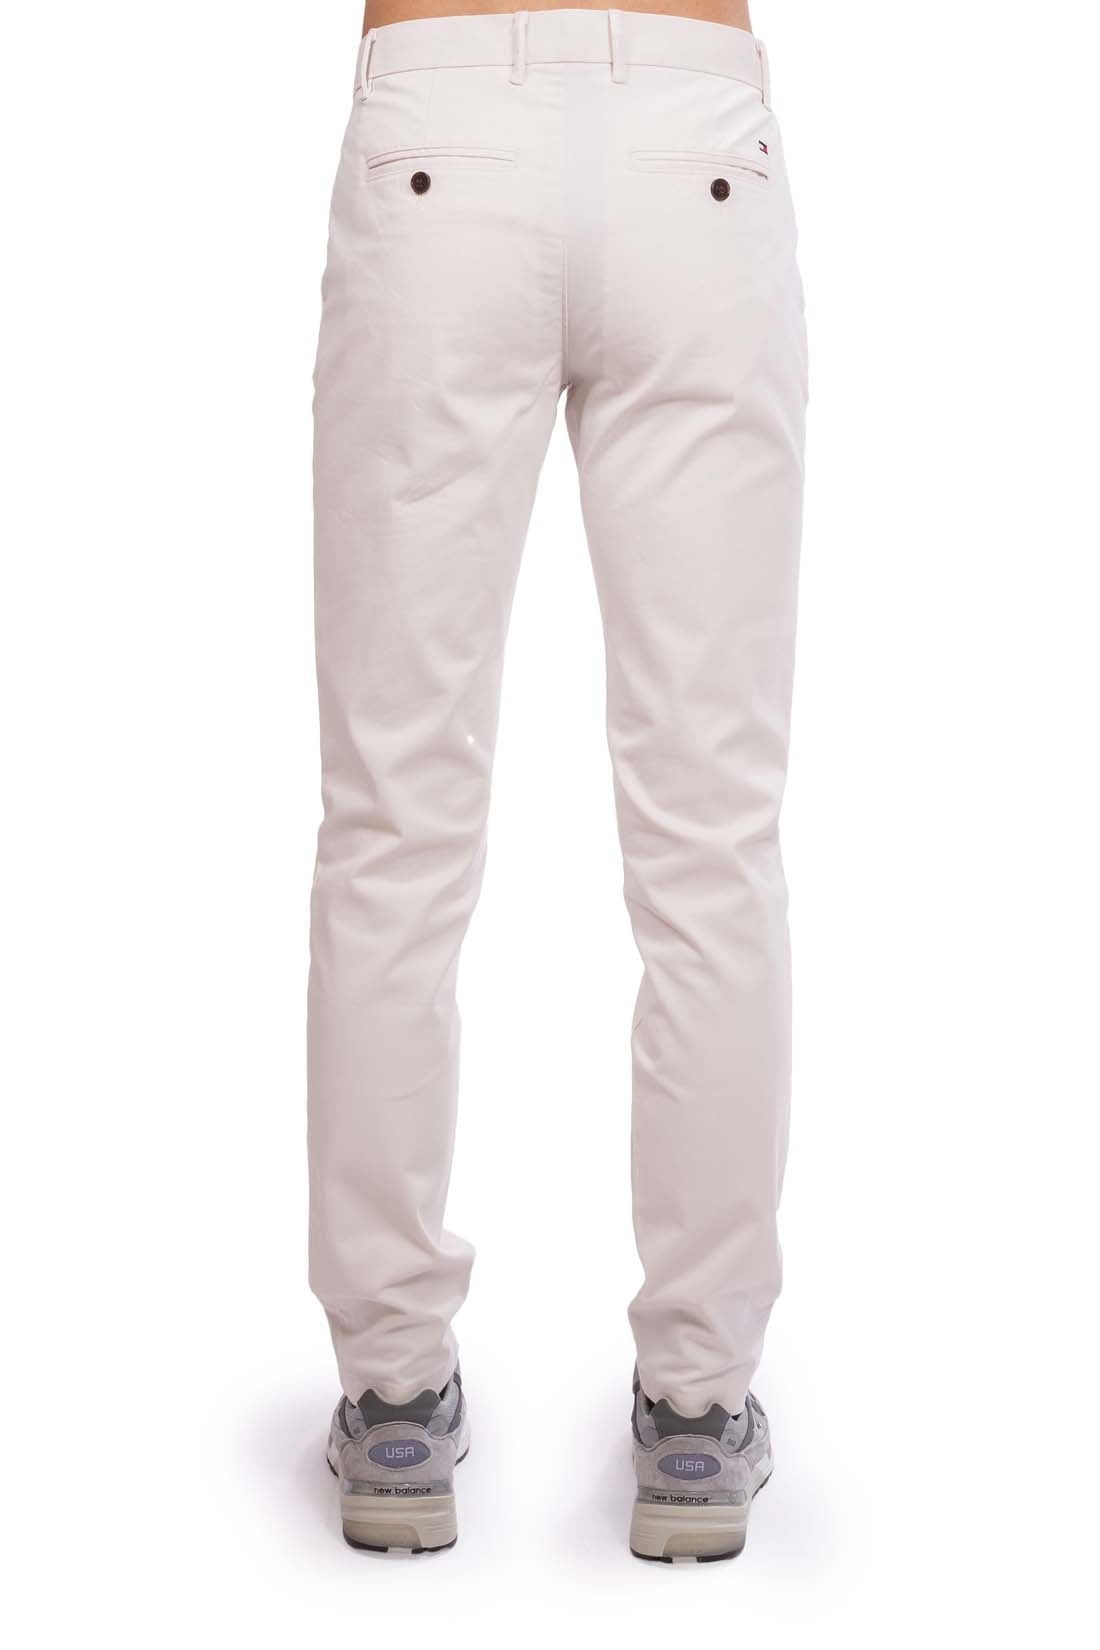 Pantalon chino Tommy Hilfiger blanc en coton pour homme I Georgespaul